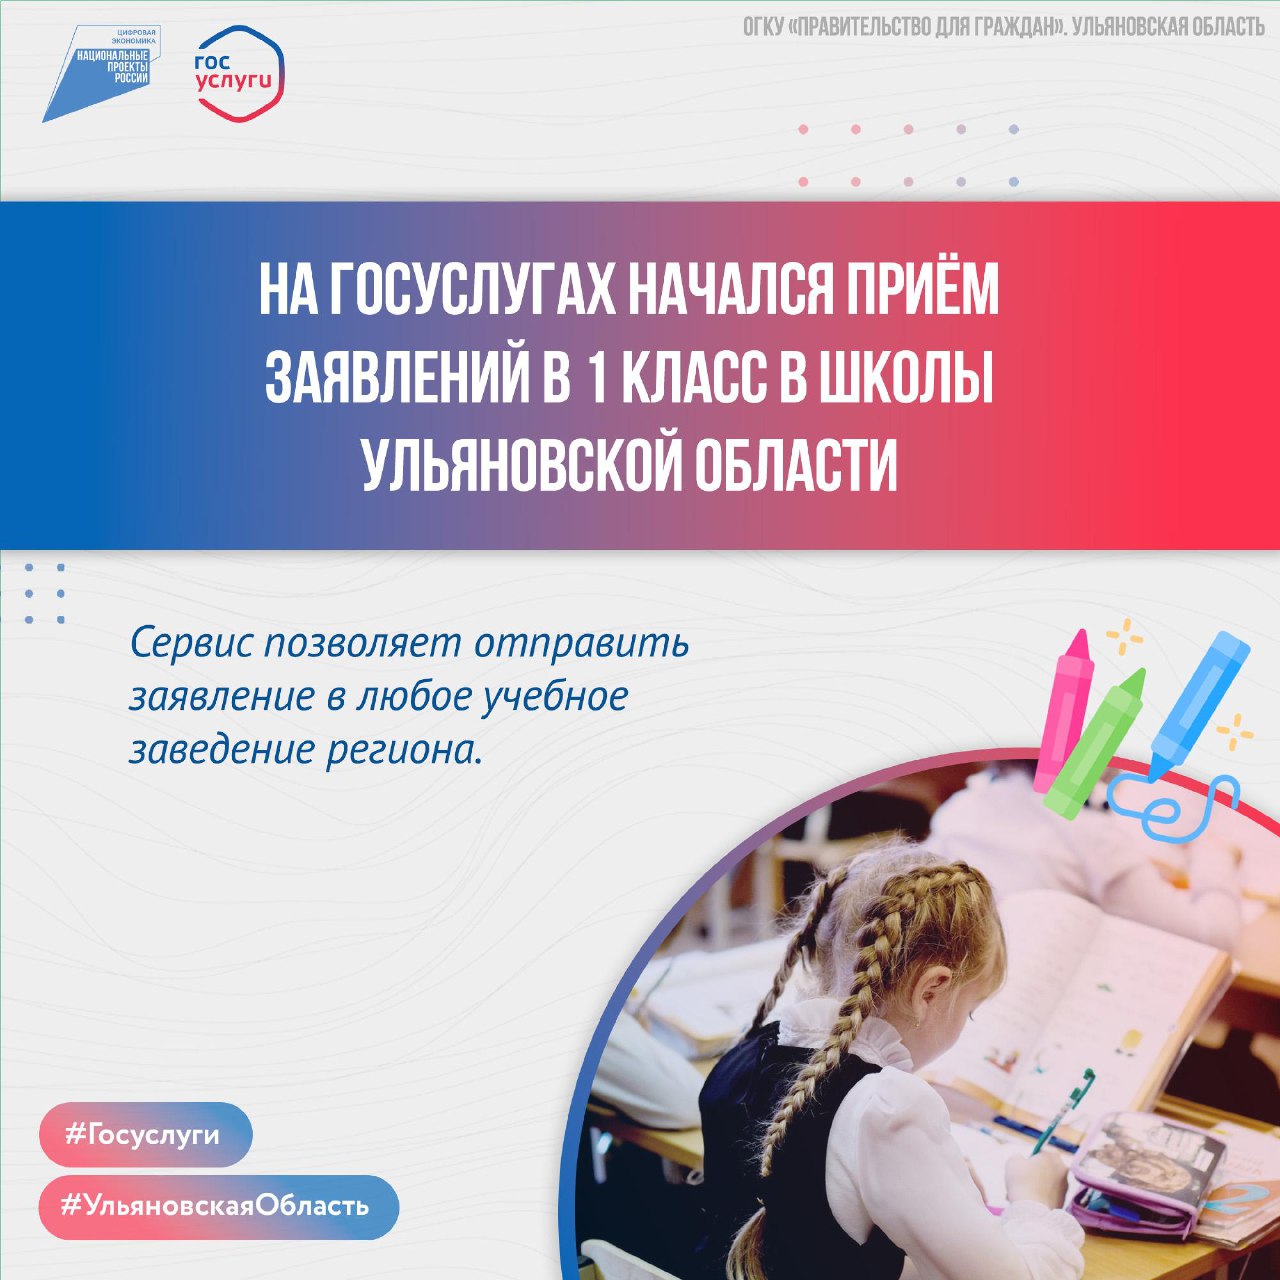 На Госуслугах начался приём заявлений в 1 класс в школы Ульяновской области.